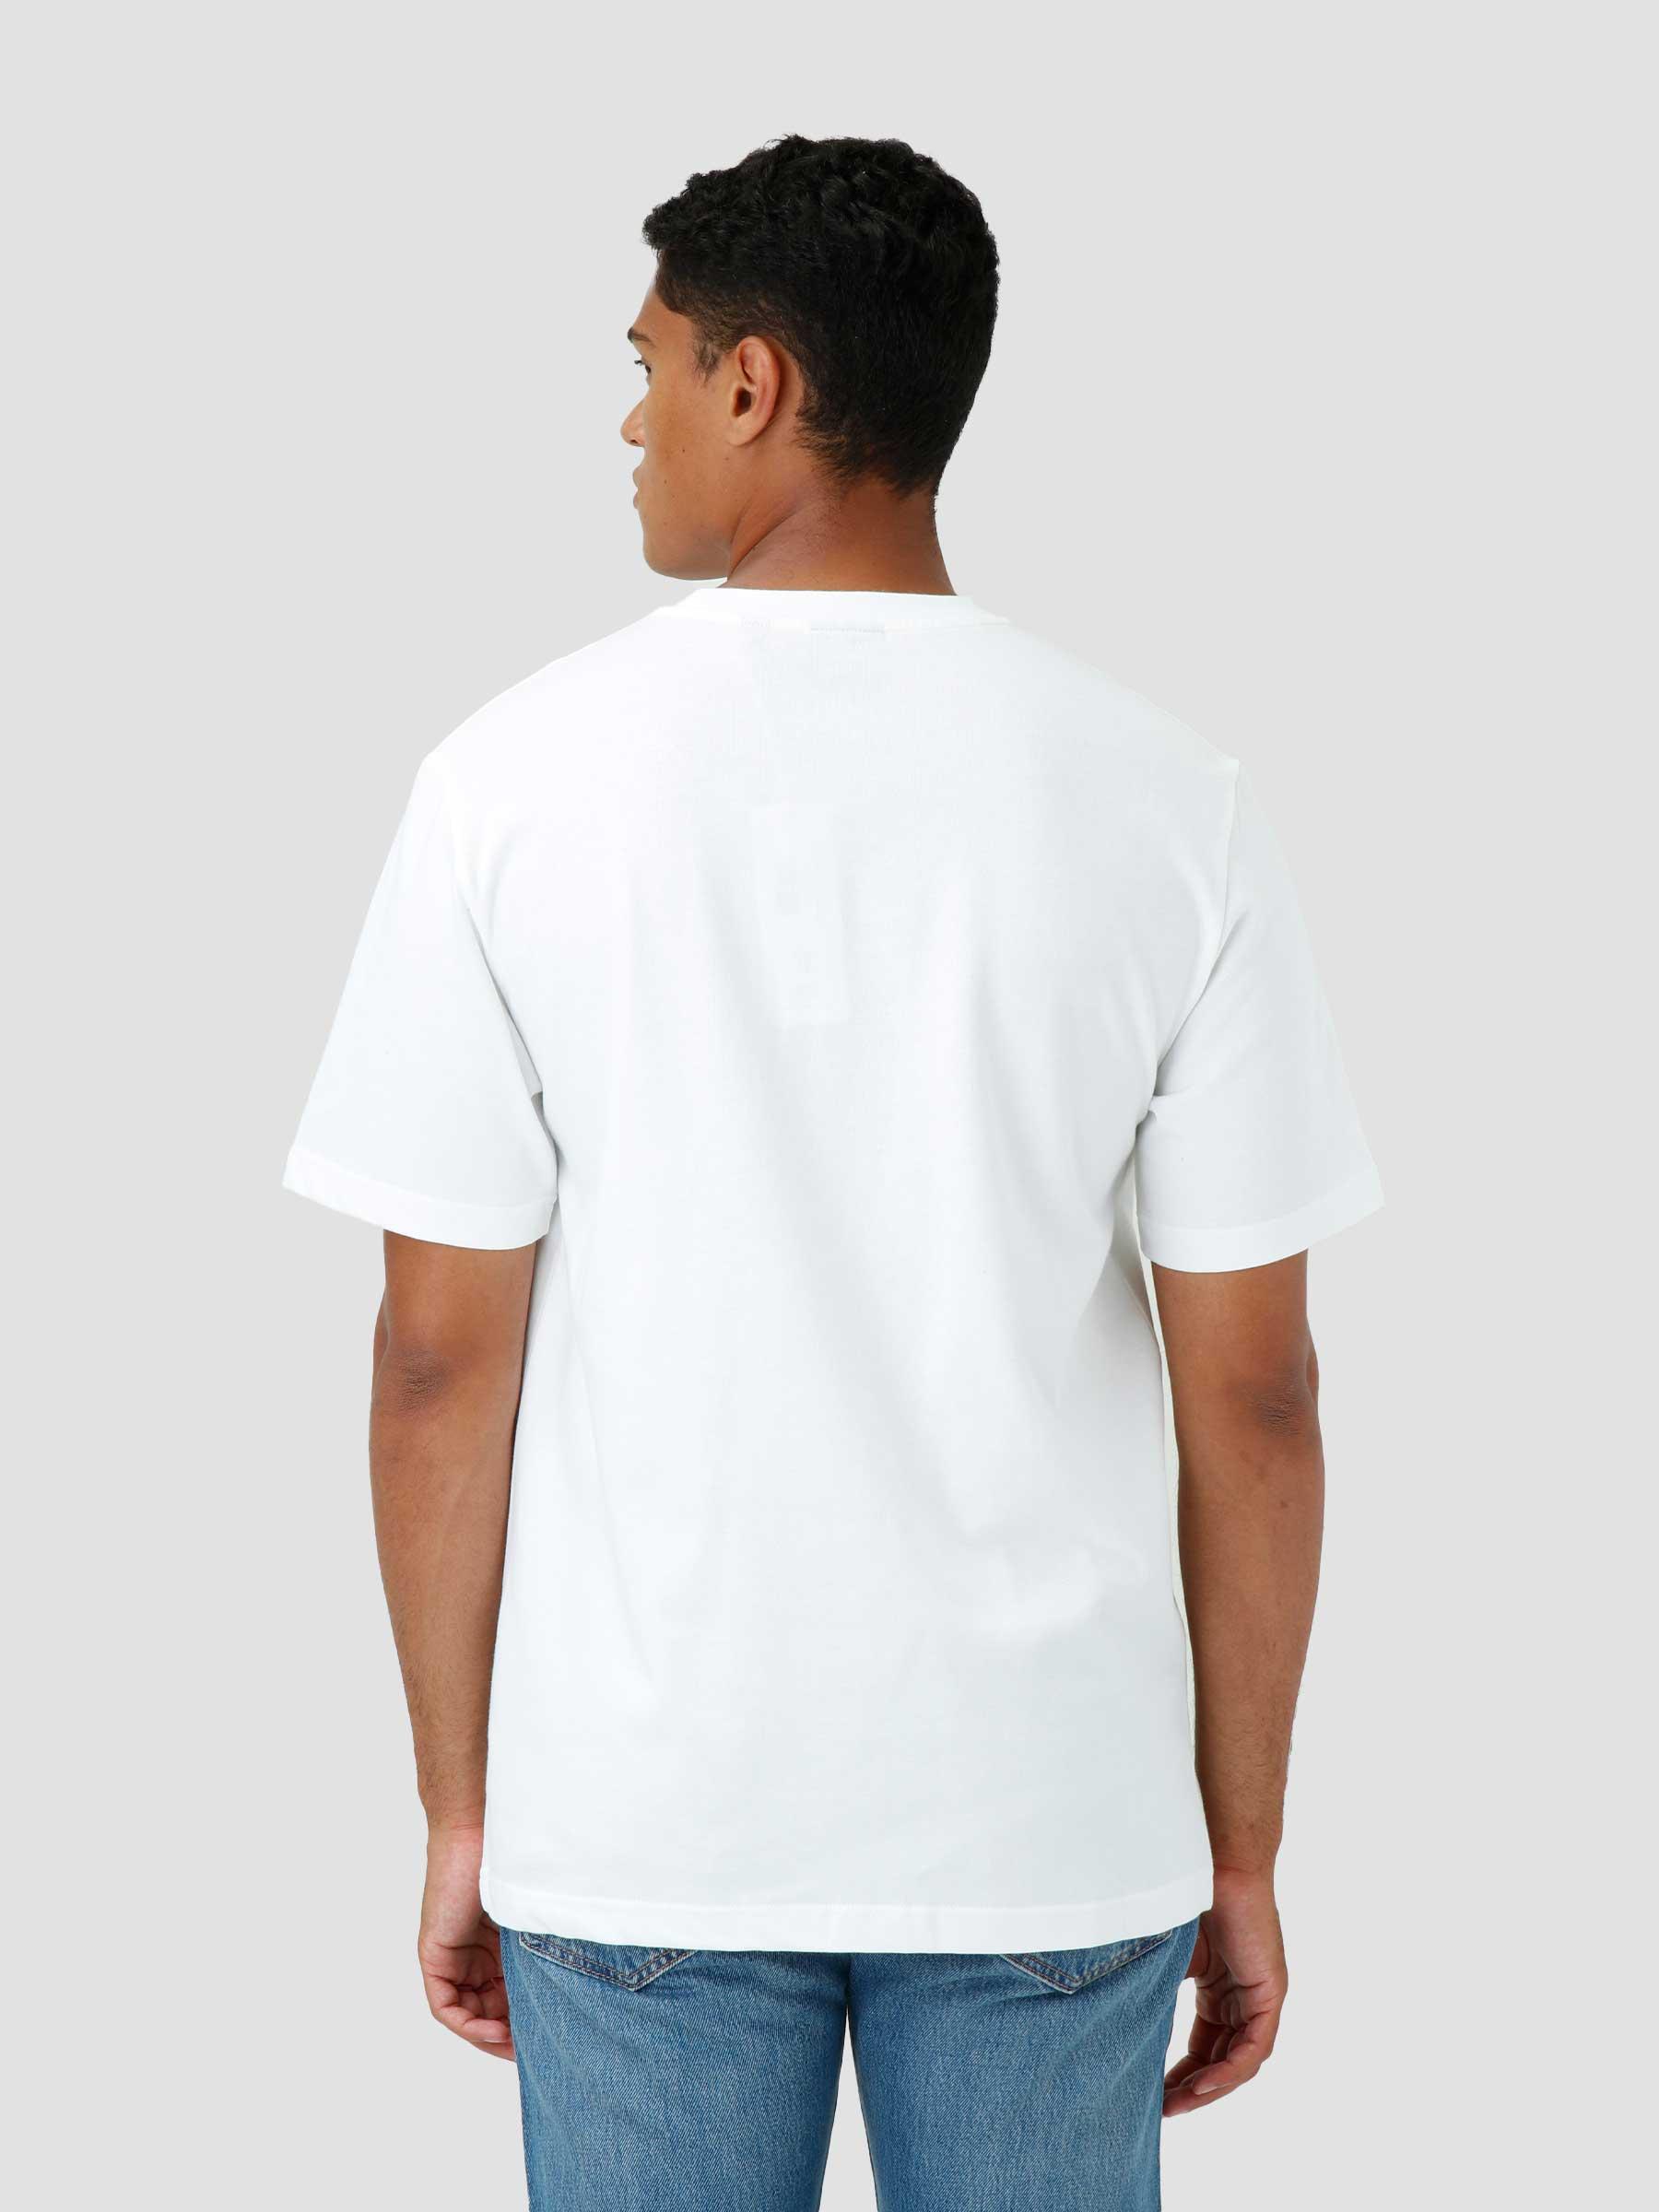 Nakato T-shirt White 2221075